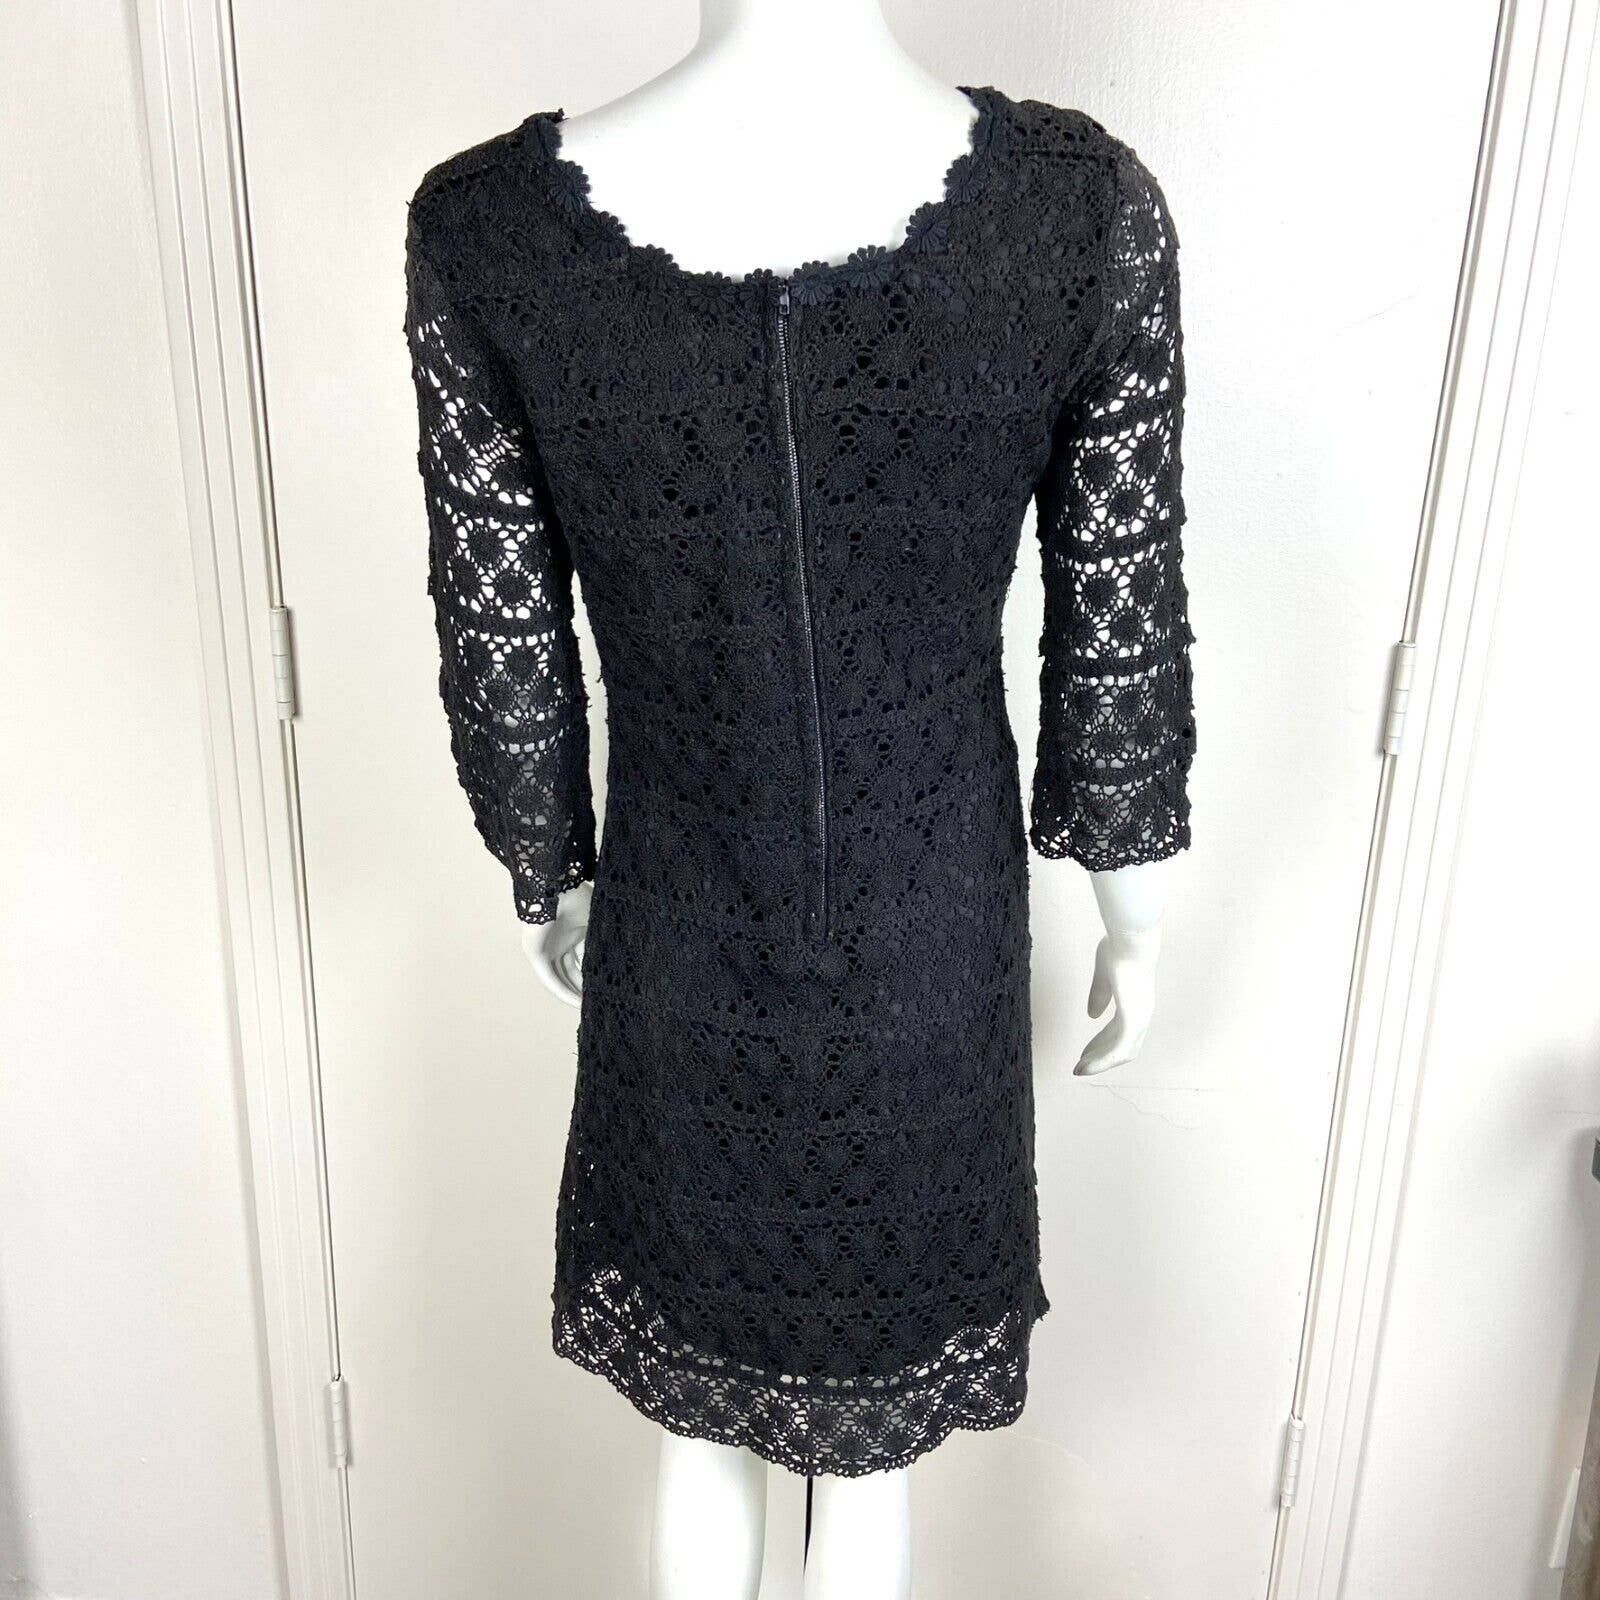 Handmade Vintage 60s 70s Black Crochet Lace Mini Shift Dress Size S / US 4 / IT 40 - 7 Thumbnail